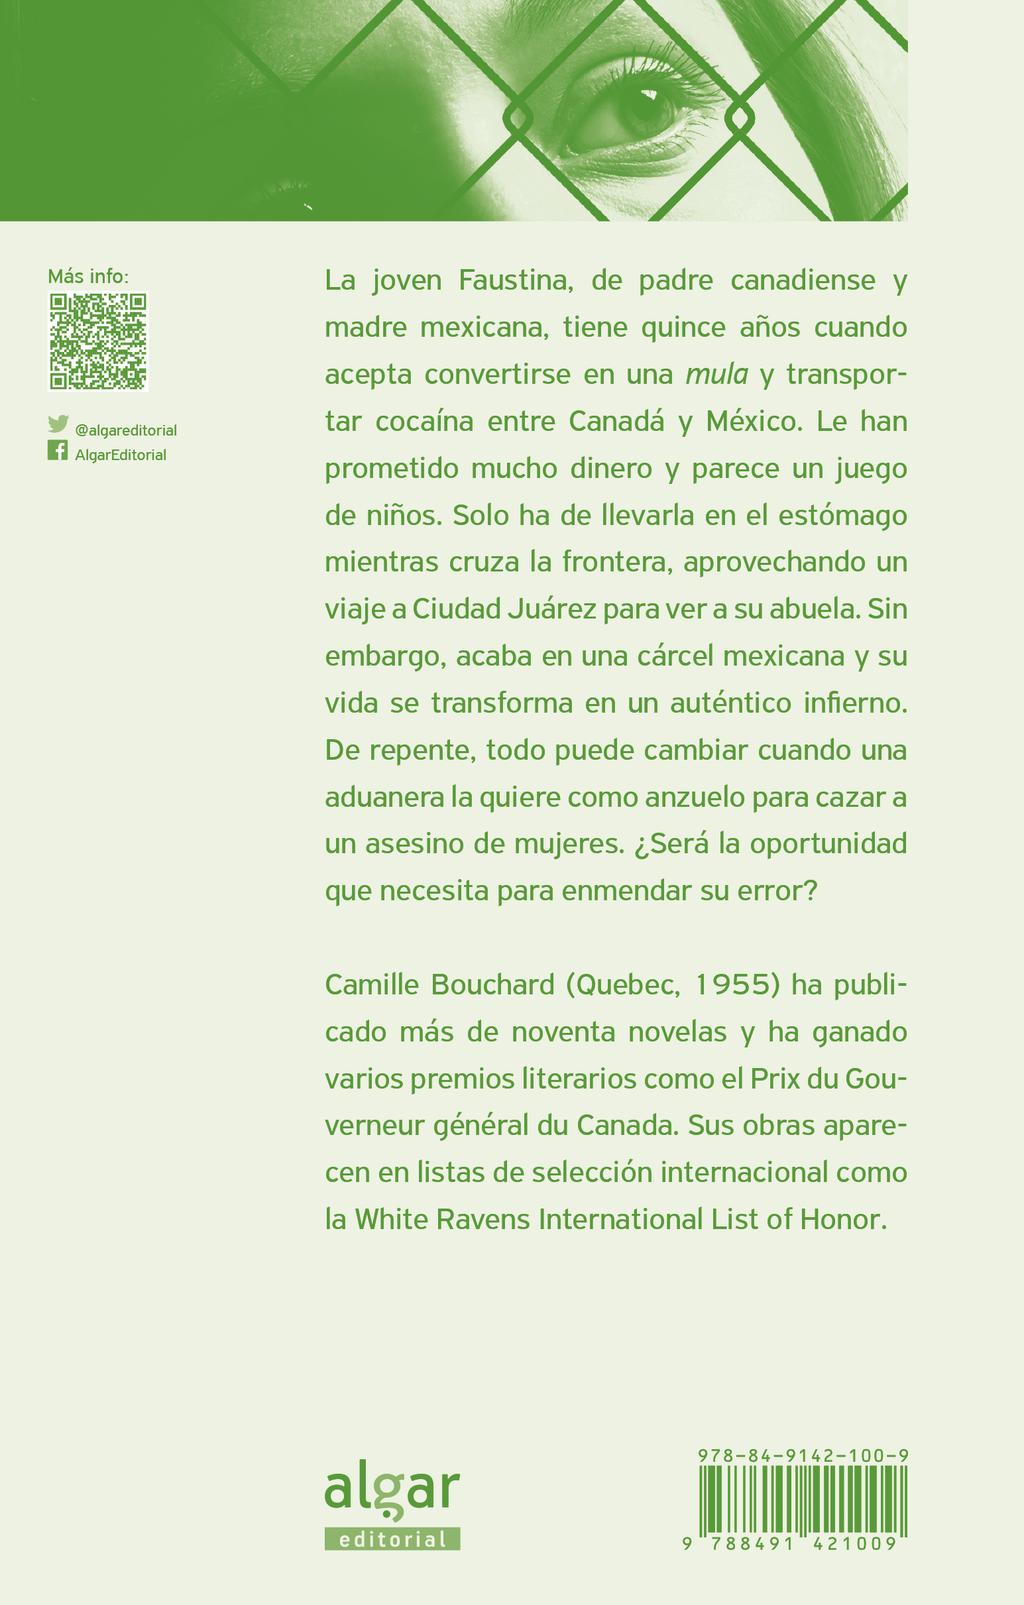 Propuesta didáctica referida al libro Las fuerzas del desorden (ISBN: 978-84-9142-100-9)